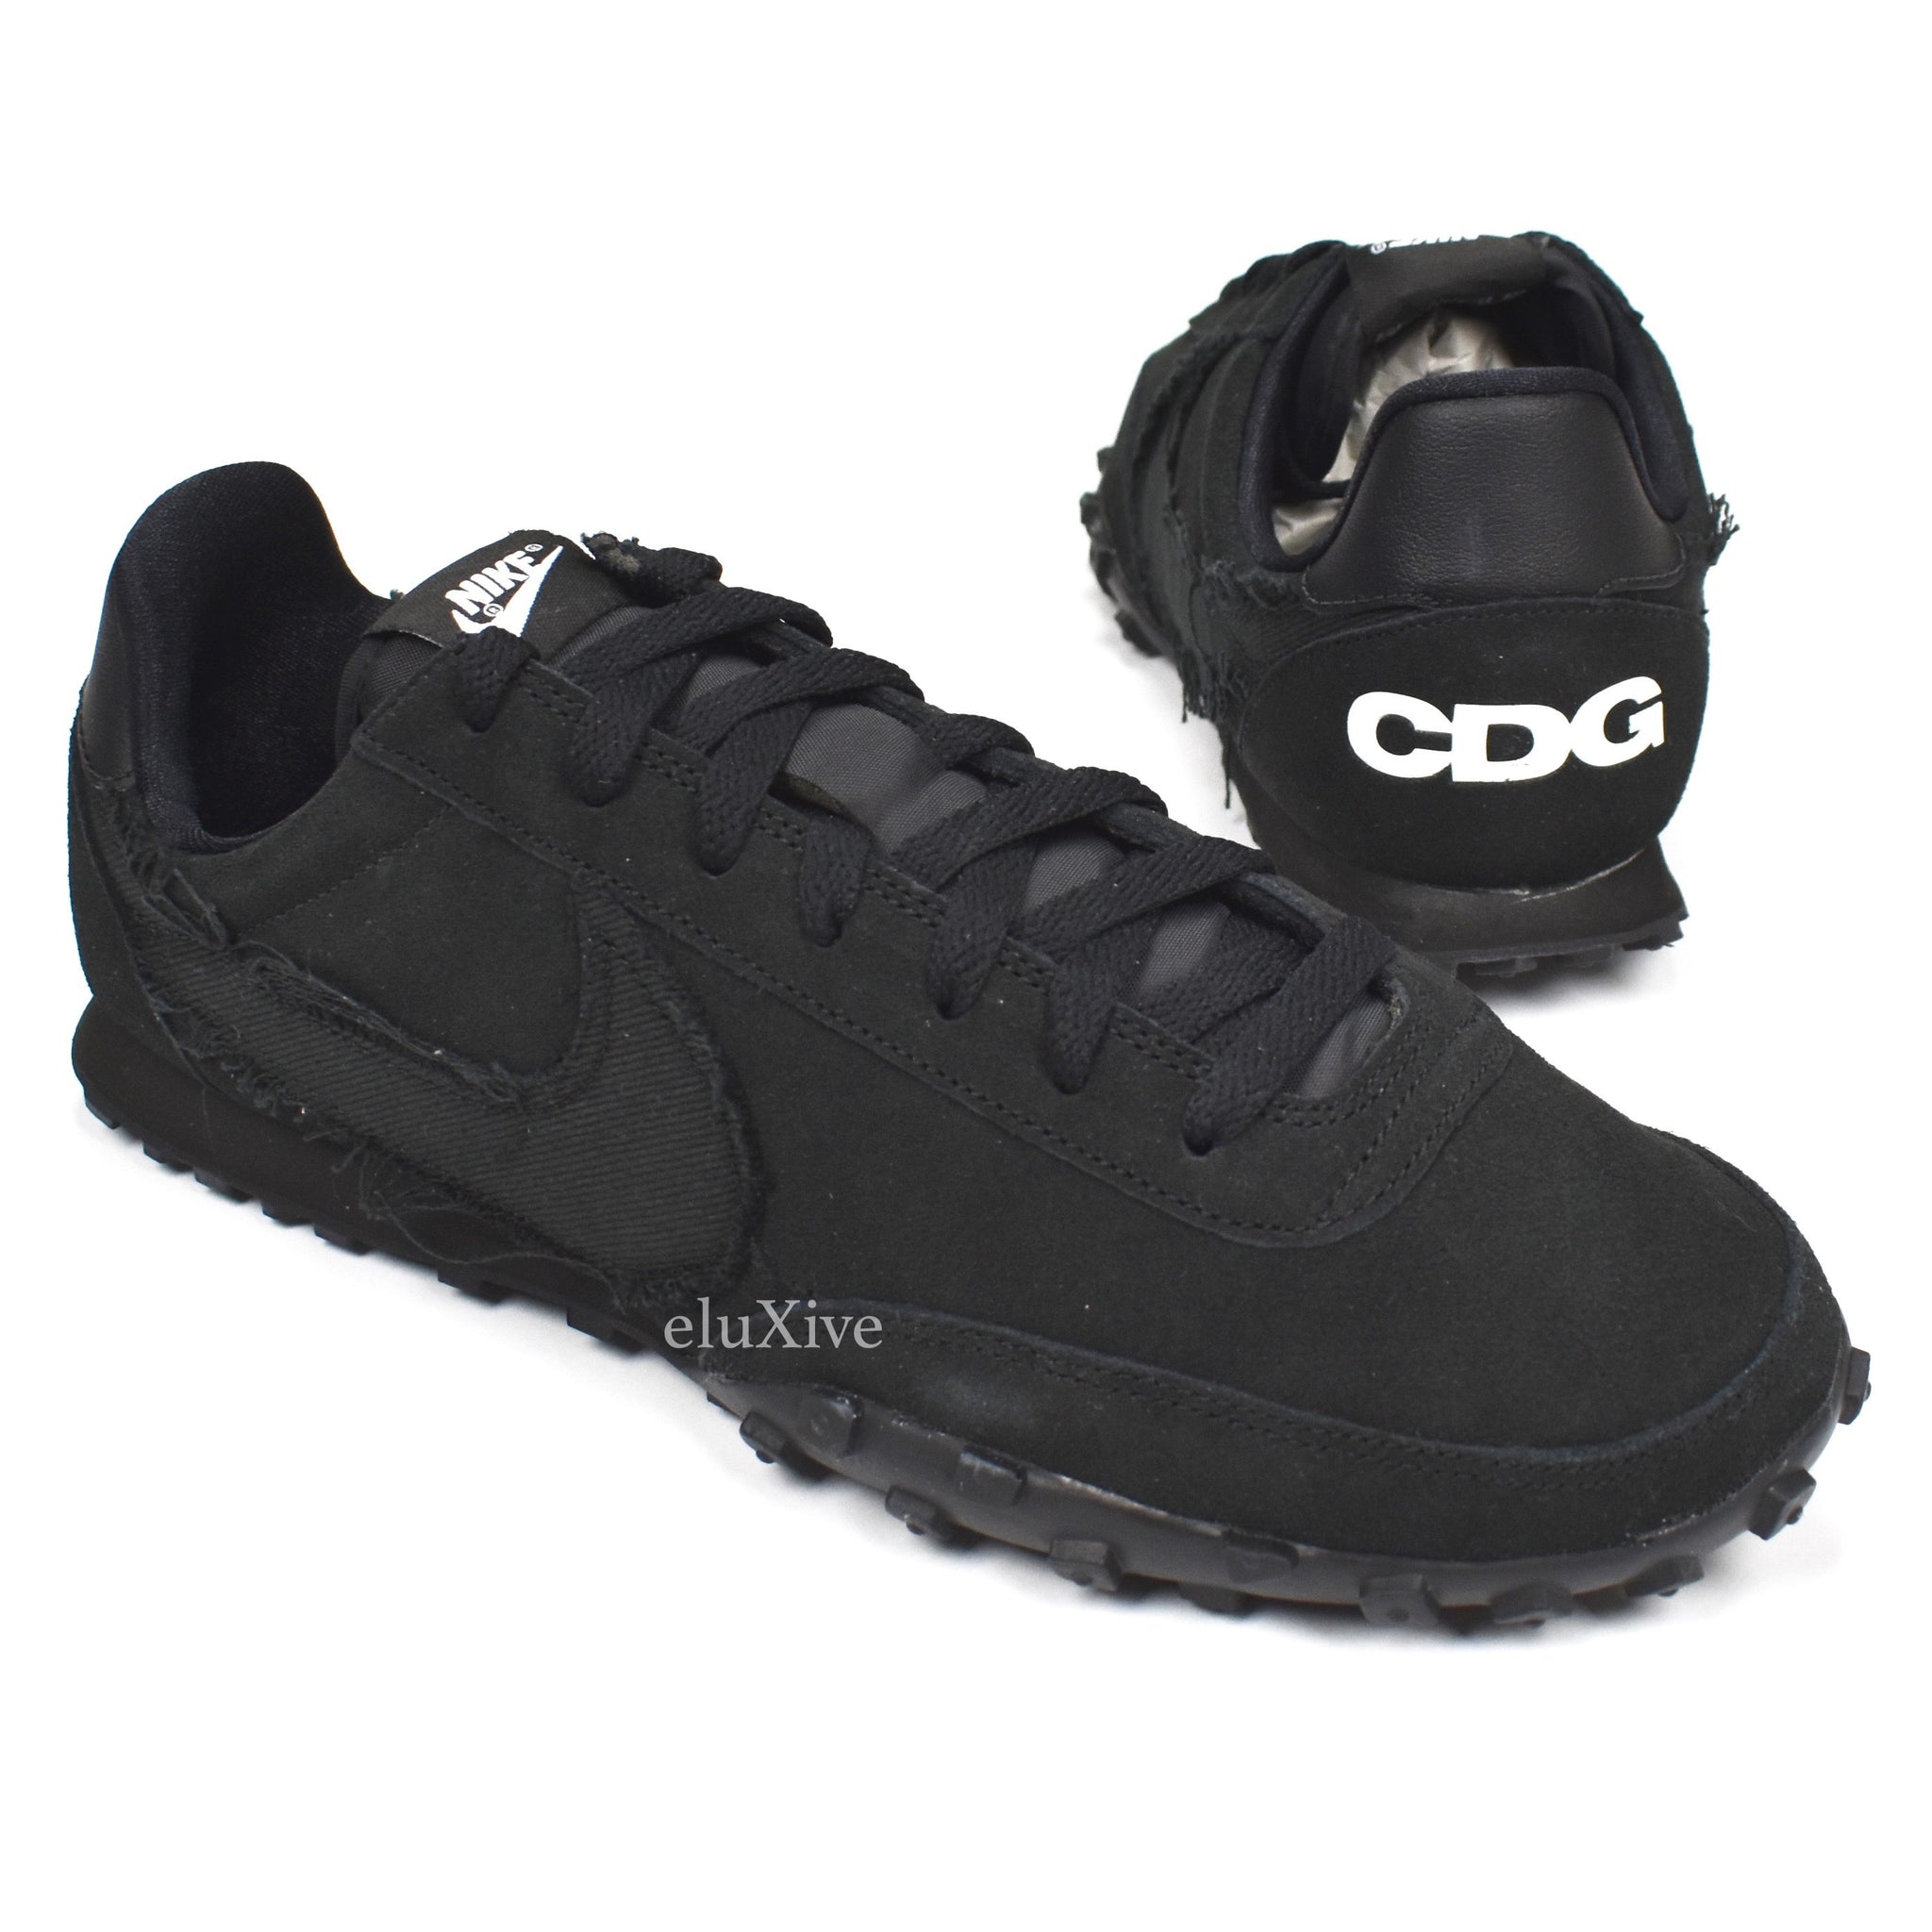 Comme des Garcons x Nike - CDG Black 